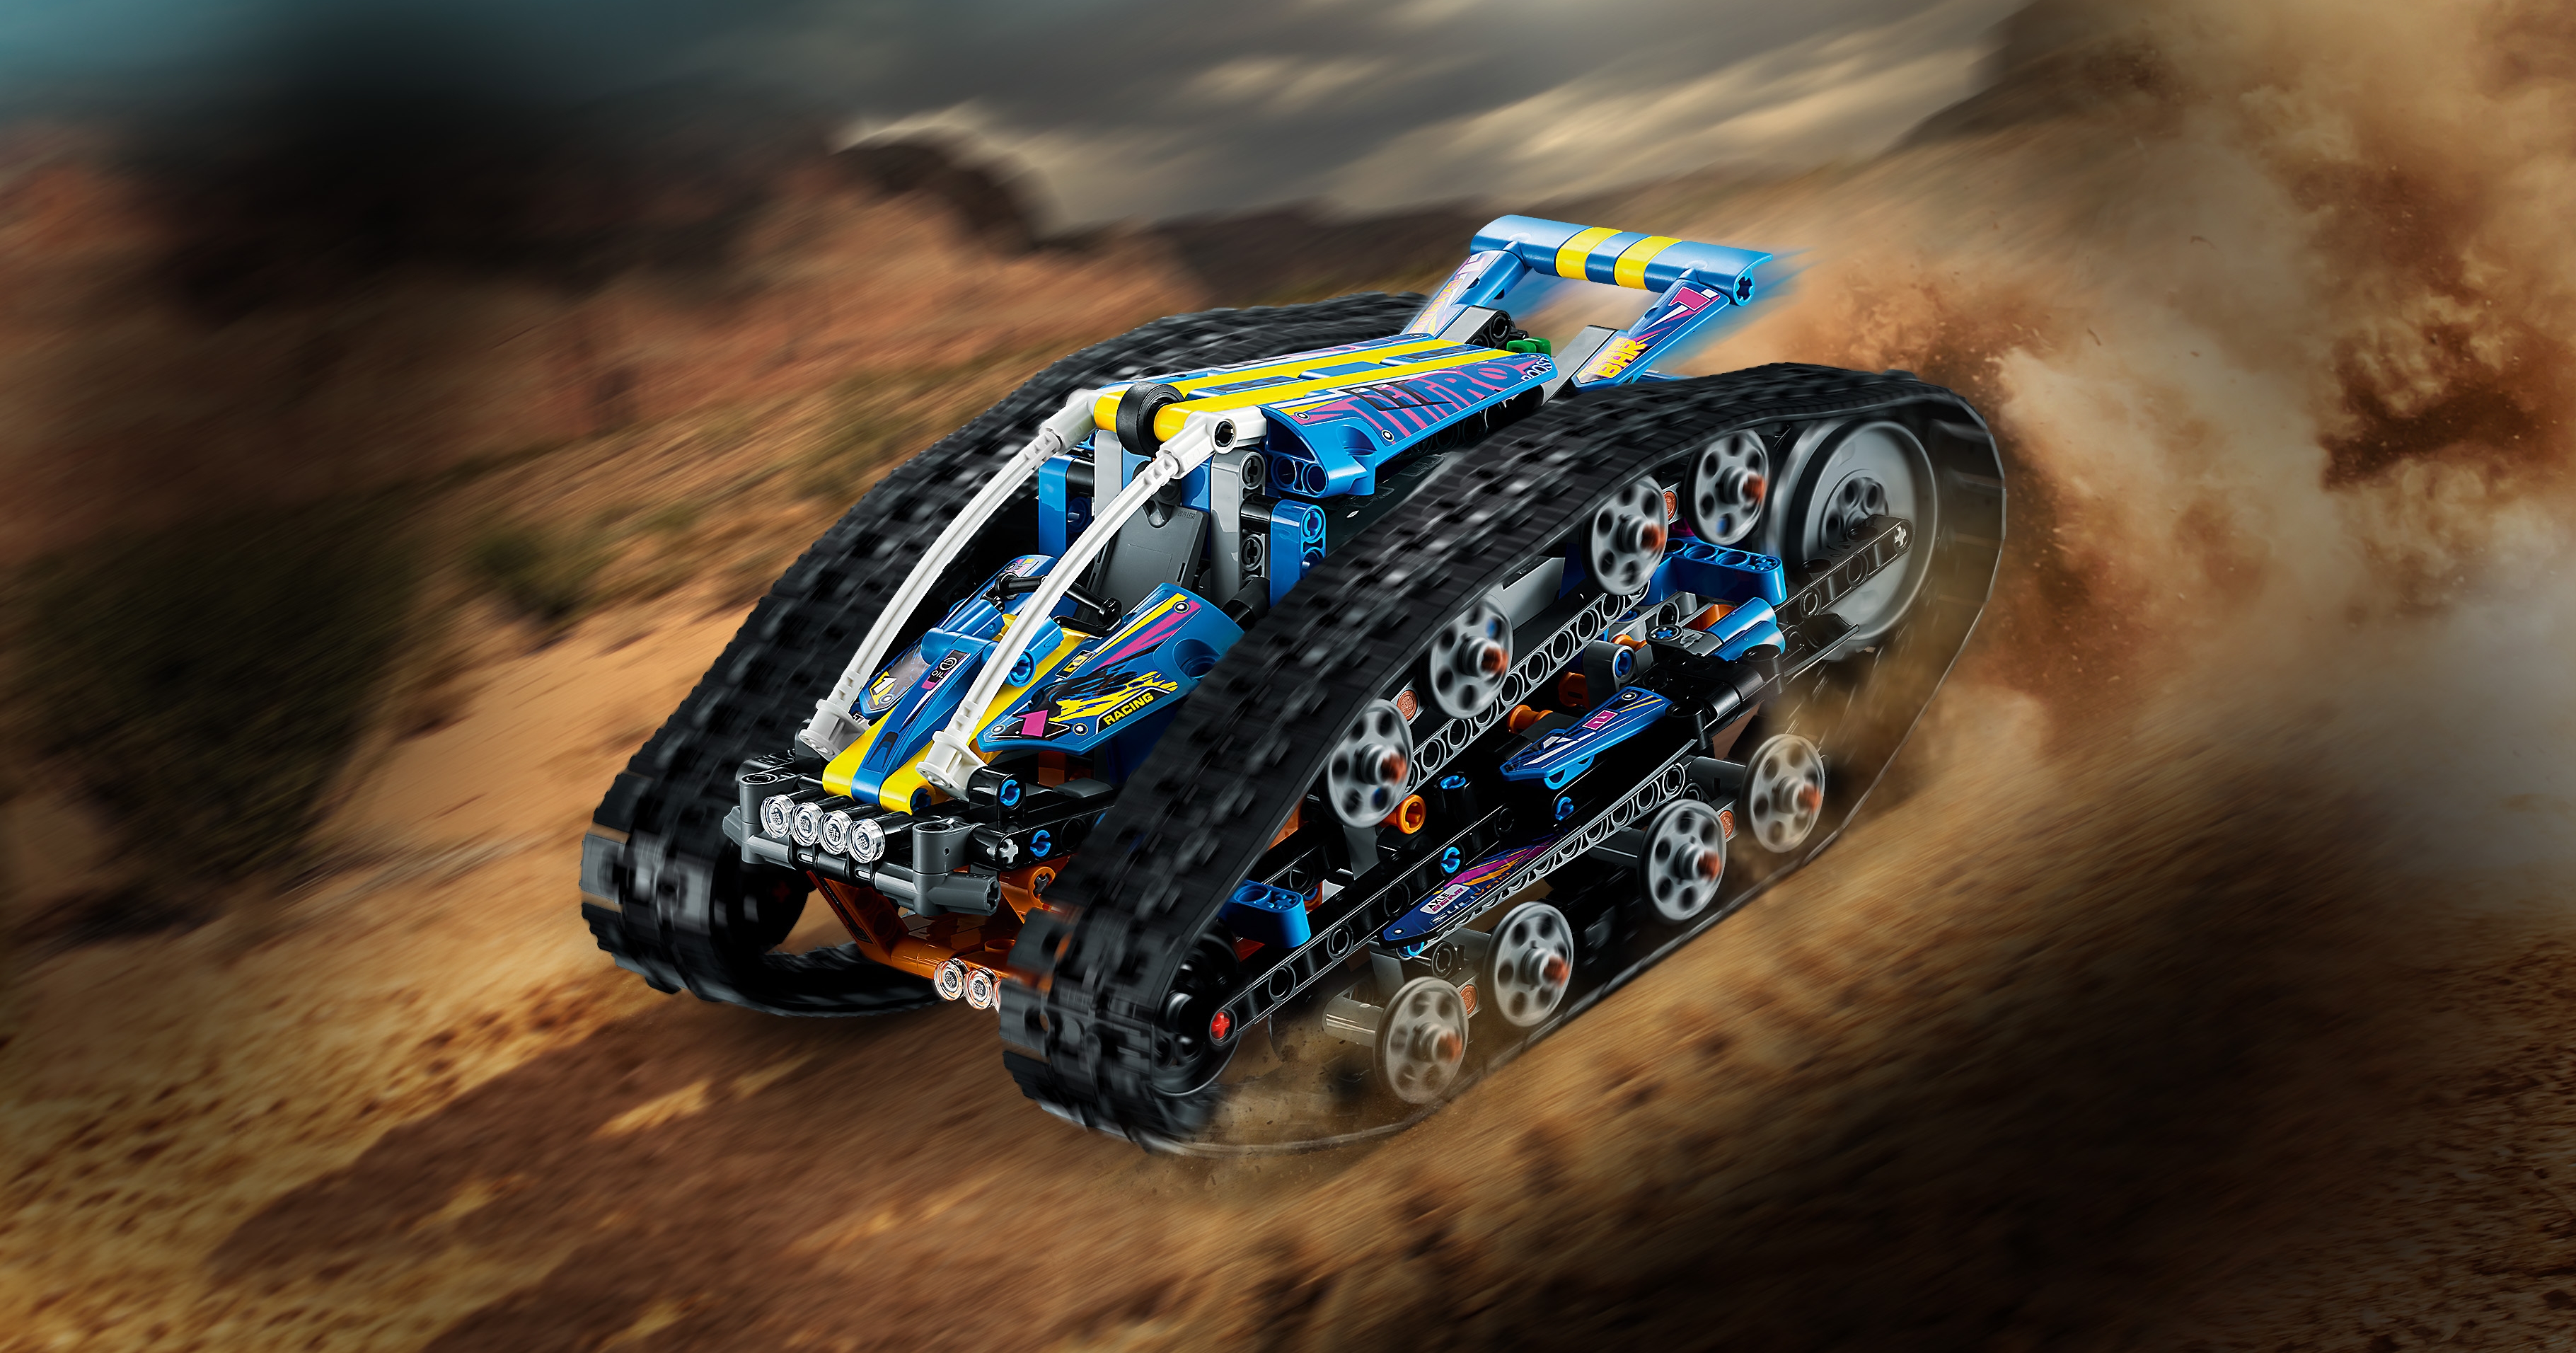 LEGO® Technic™ 42140 Le Véhicule Transformable Télécommandé - Lego